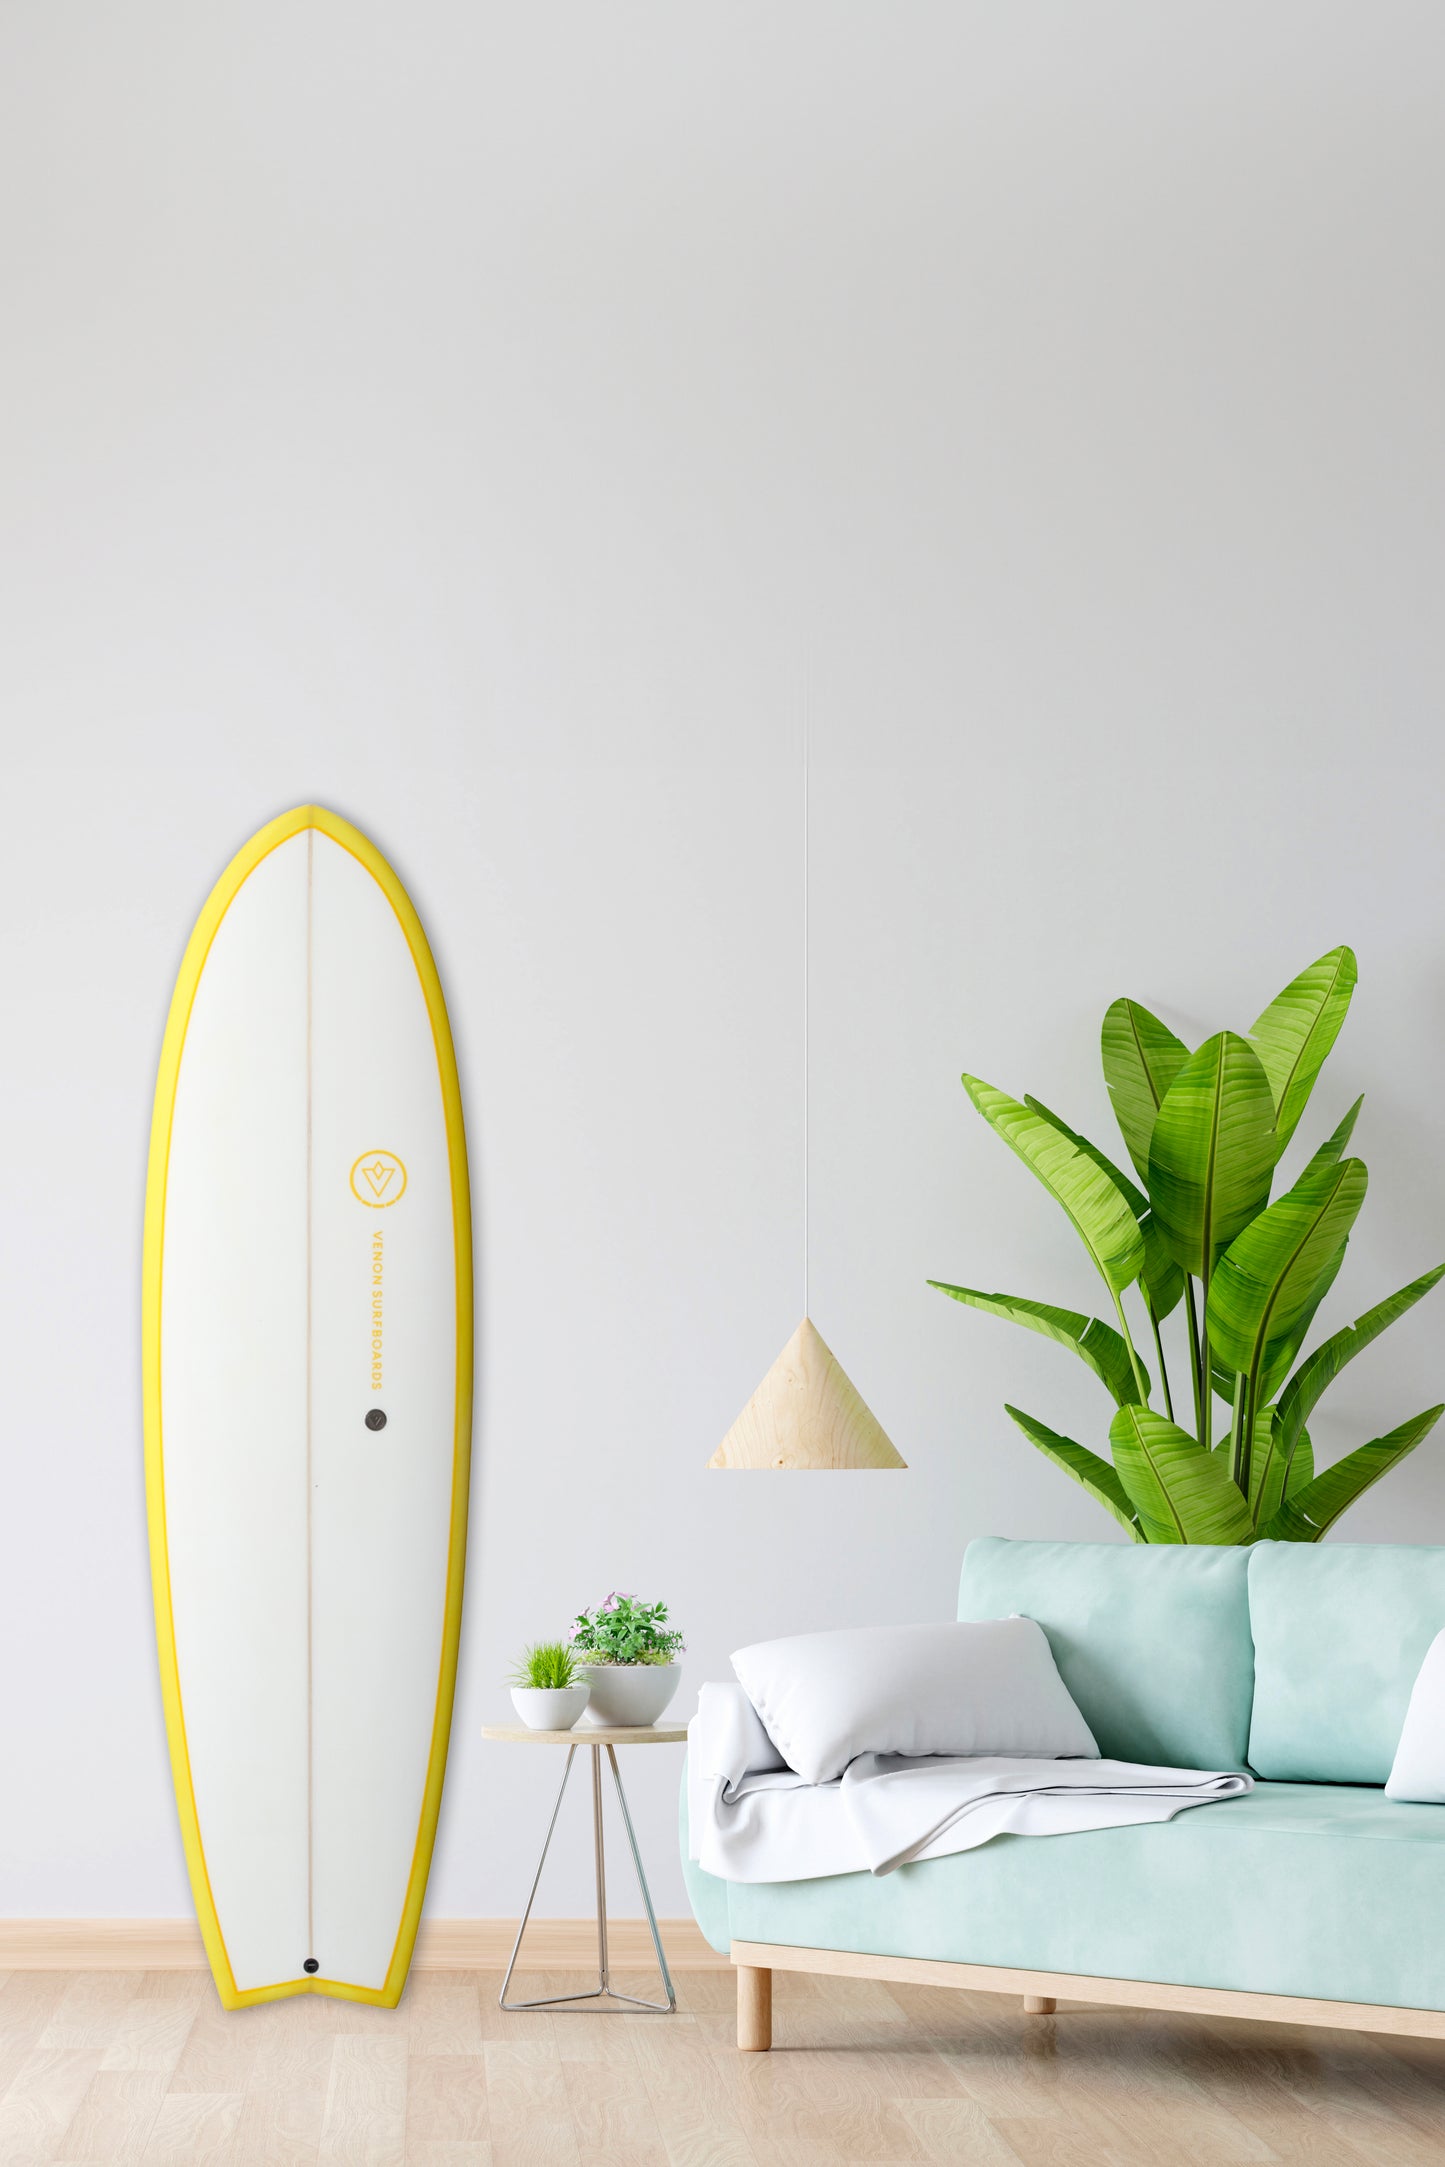 Décoration Planche de Surf - Spectre - White Deck Yellow